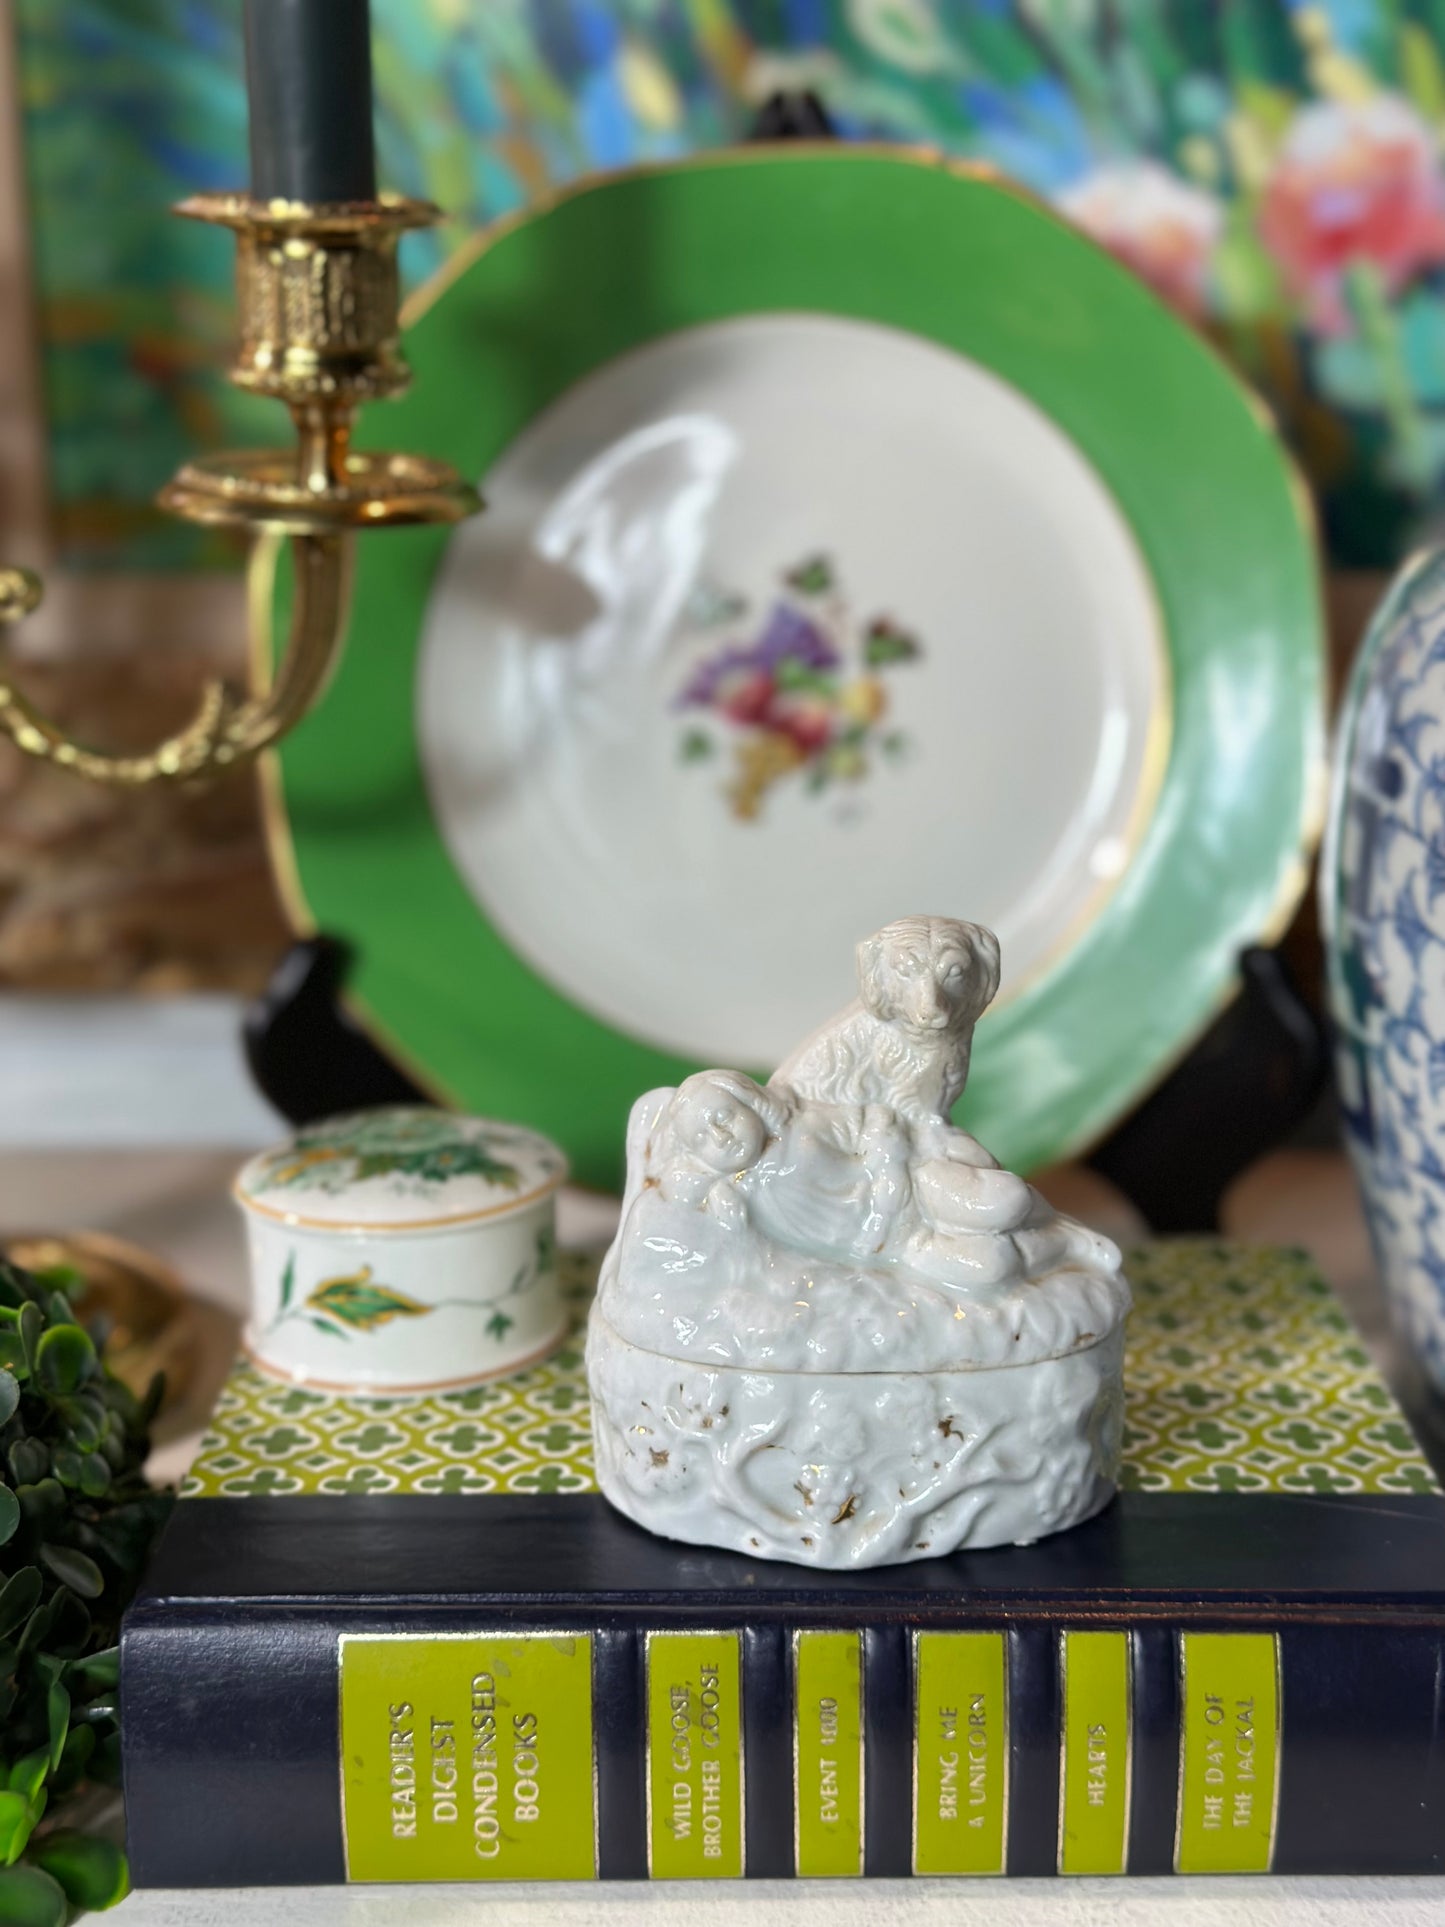 Antique Spaniel Porcelain Trinket Box, 3.5” - Excellent!